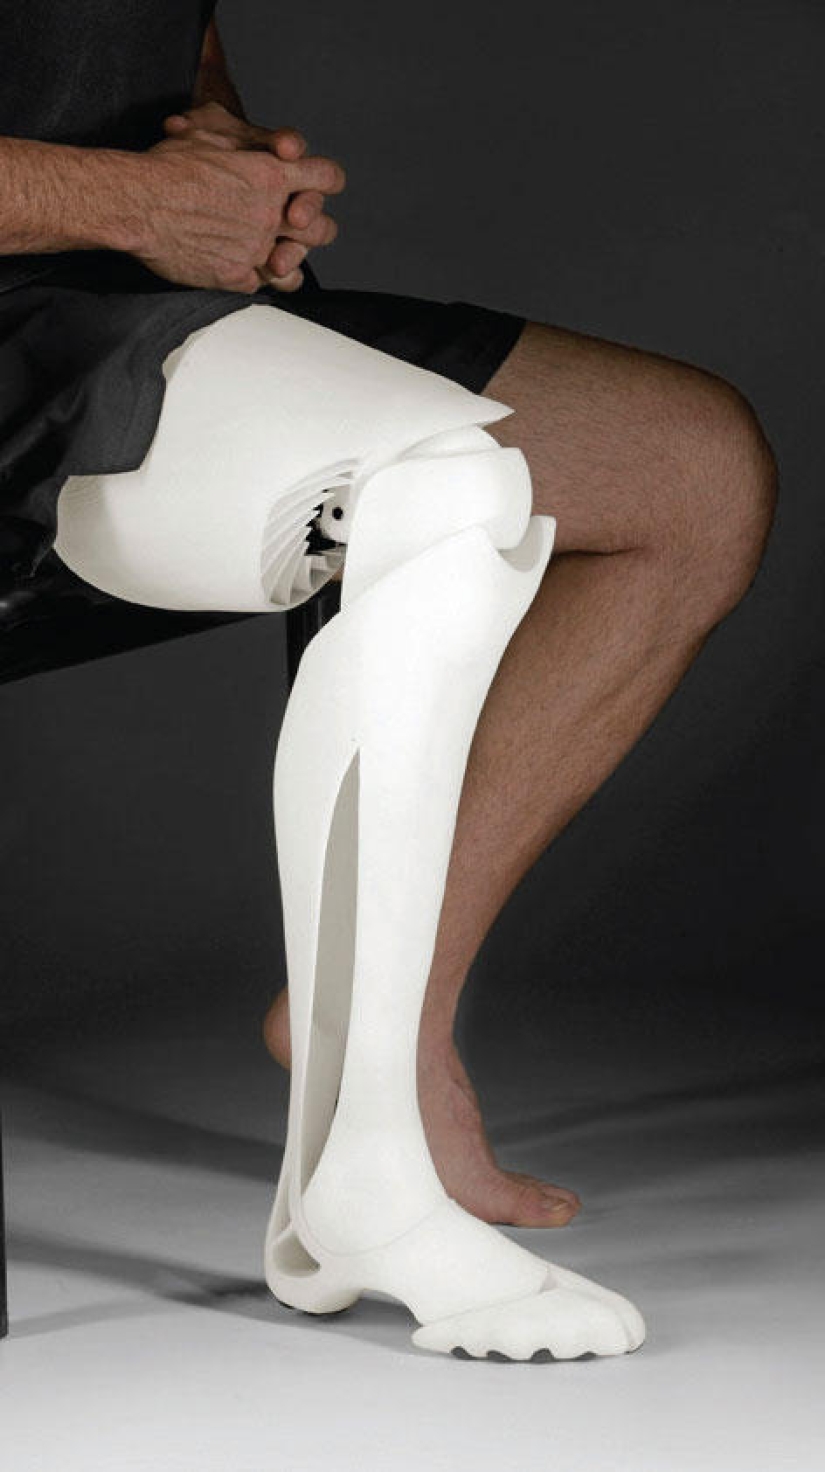 ¡Las prótesis también pueden ser elegantes y con estilo!